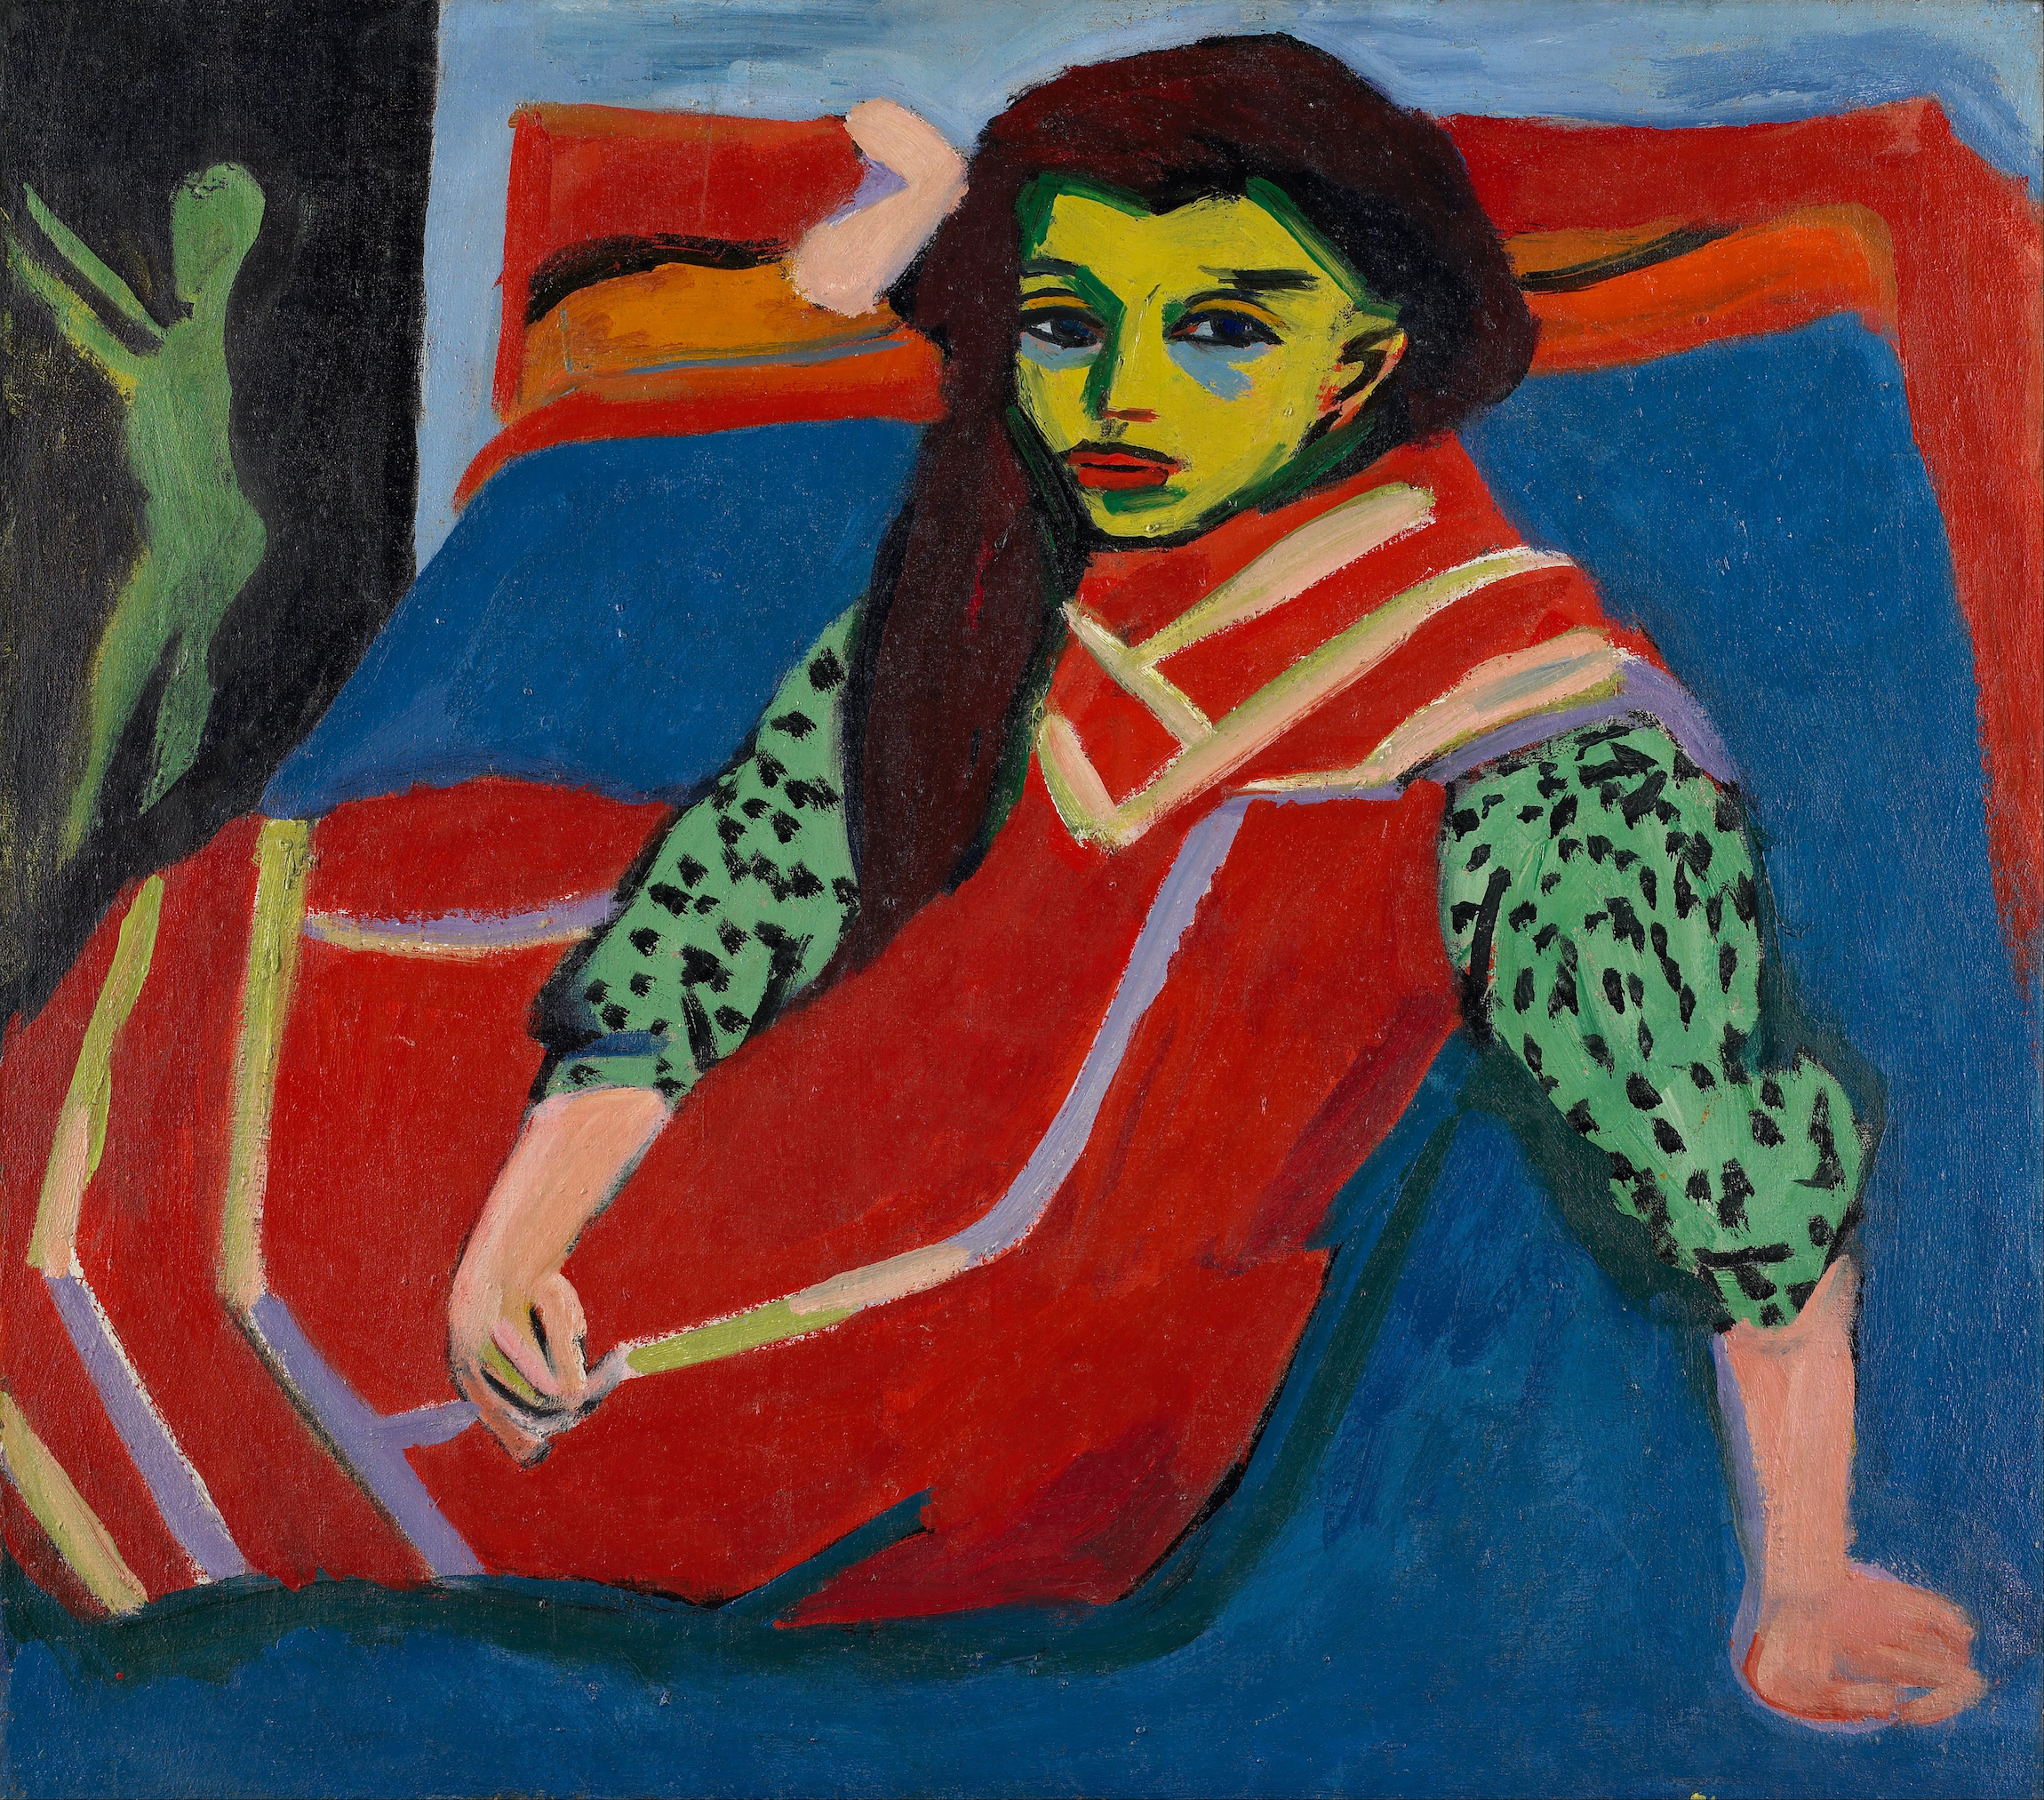 坐着的女孩(弗兰西 费尔曼) by 恩斯特·路德维格 凯尔希纳 - 1910 